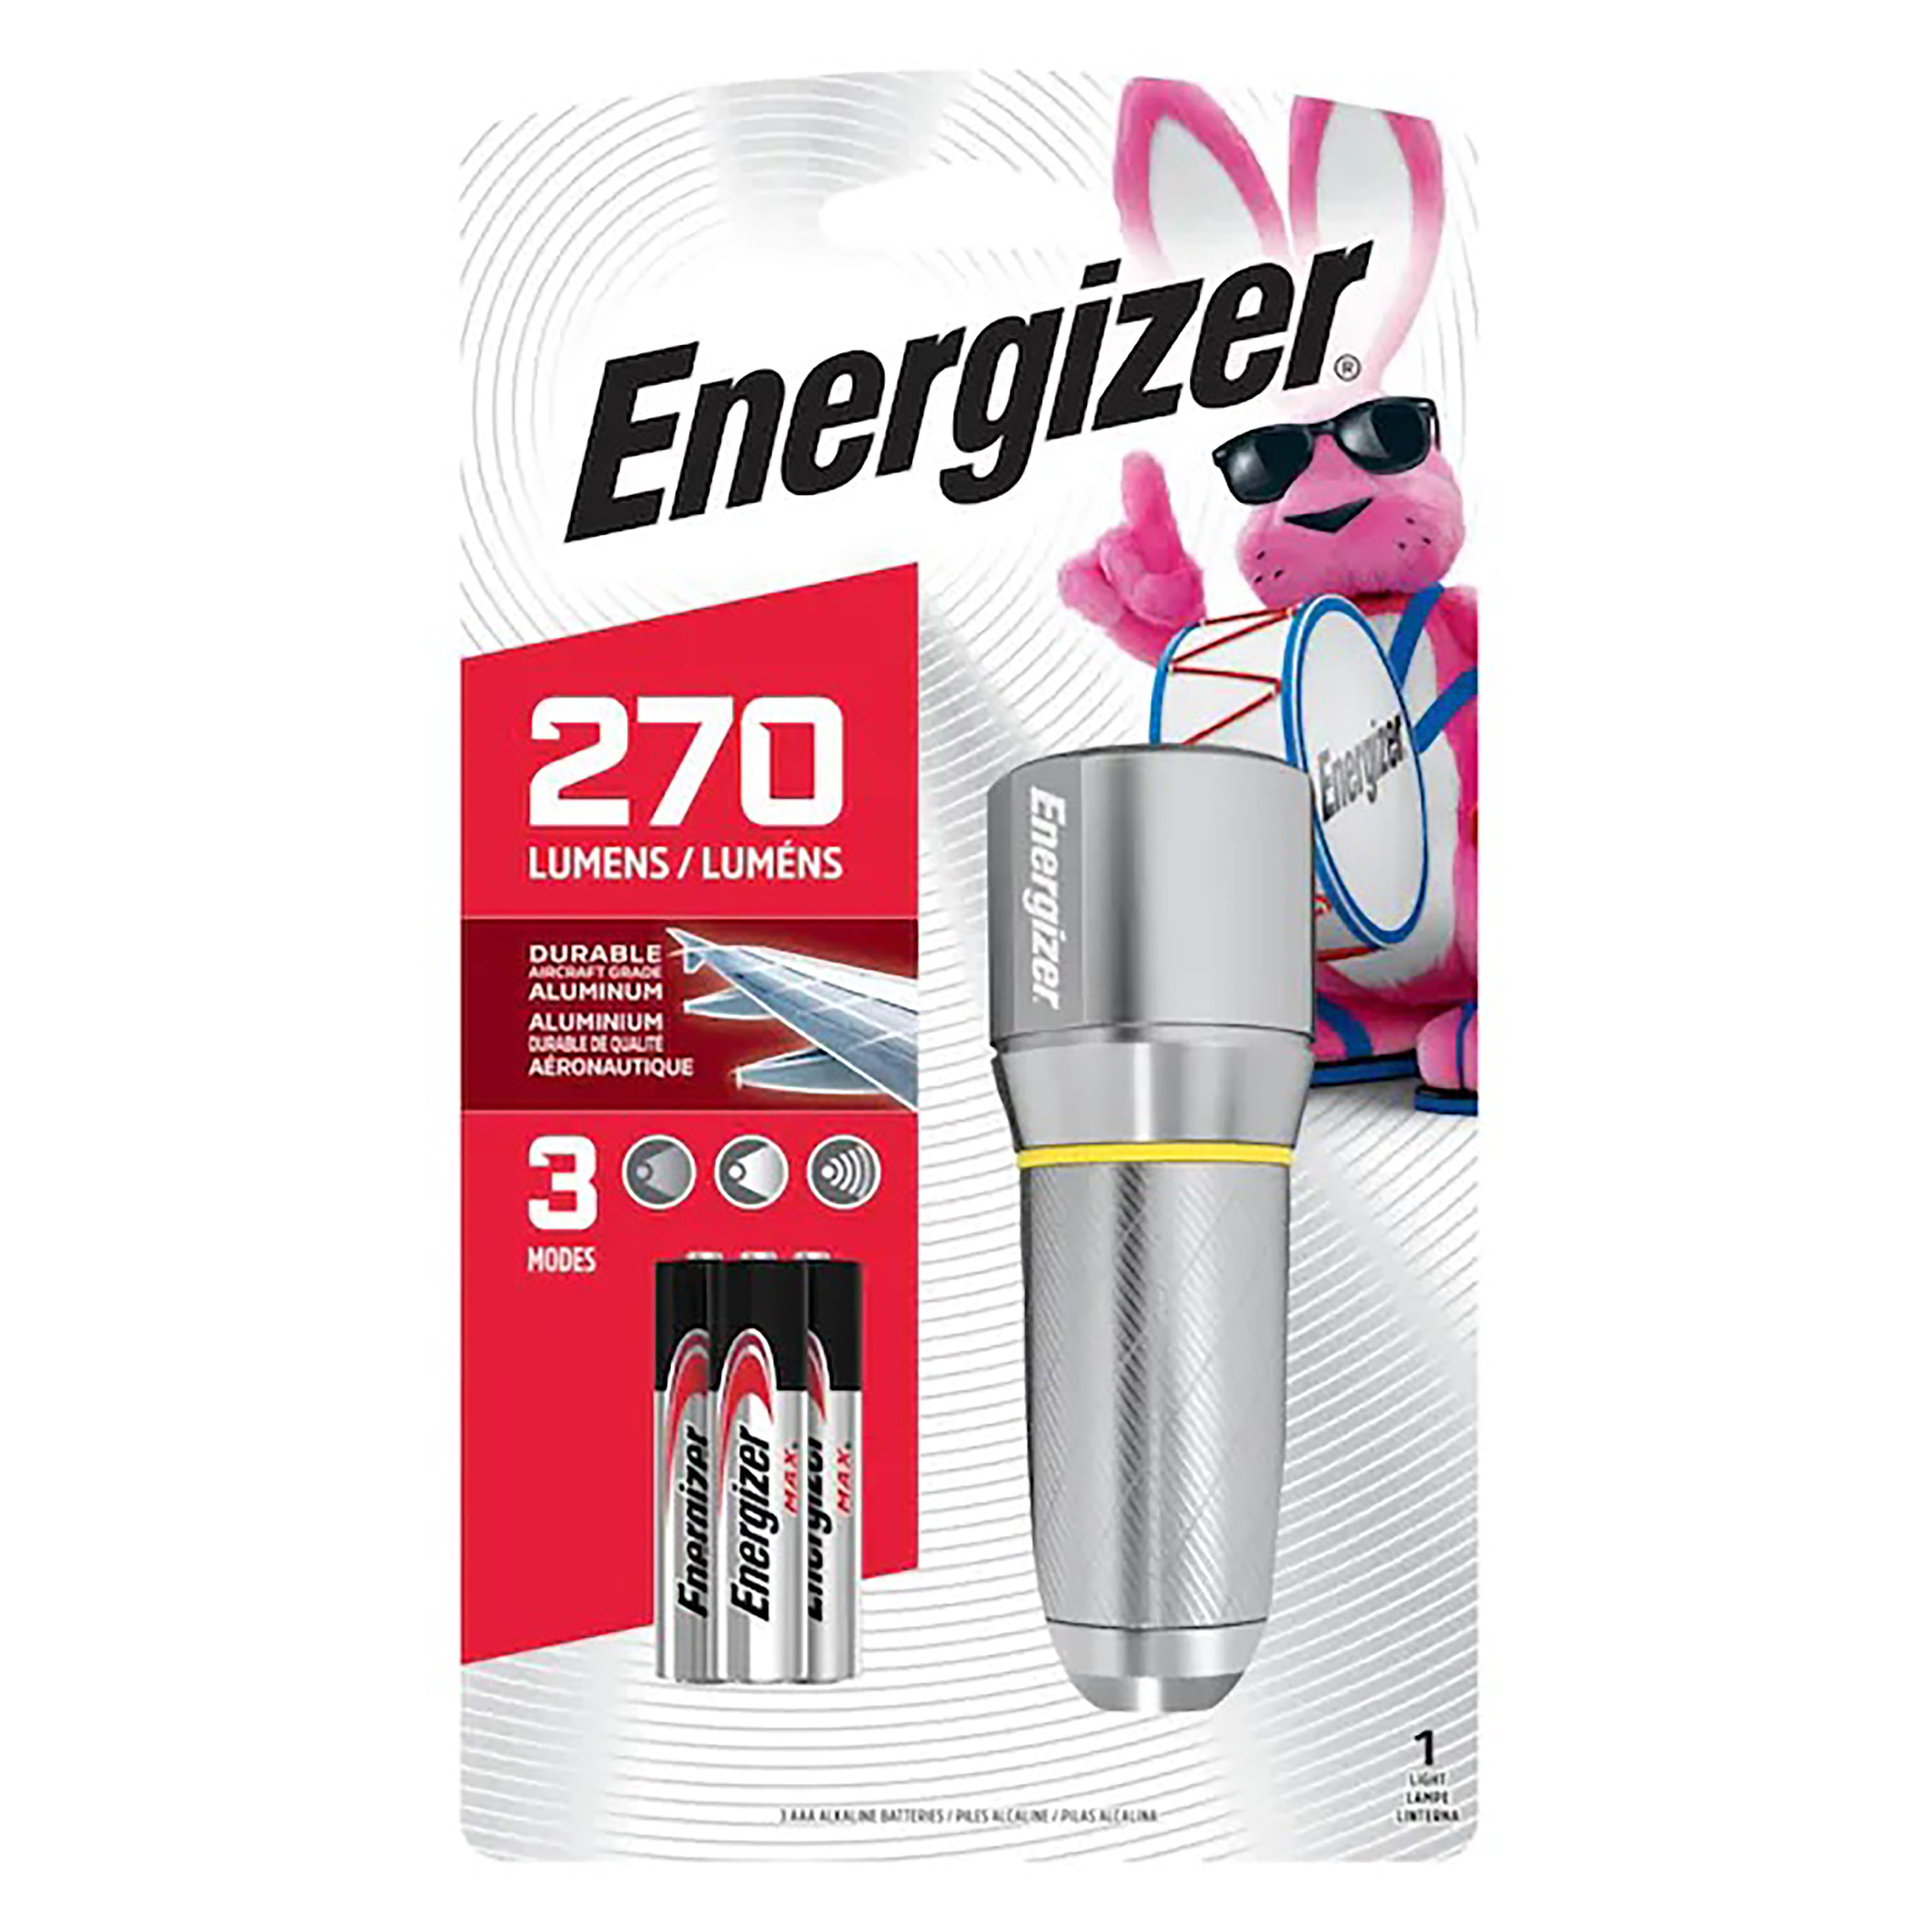 Comprar Energizer Metal 270L Walmart Costa Rica